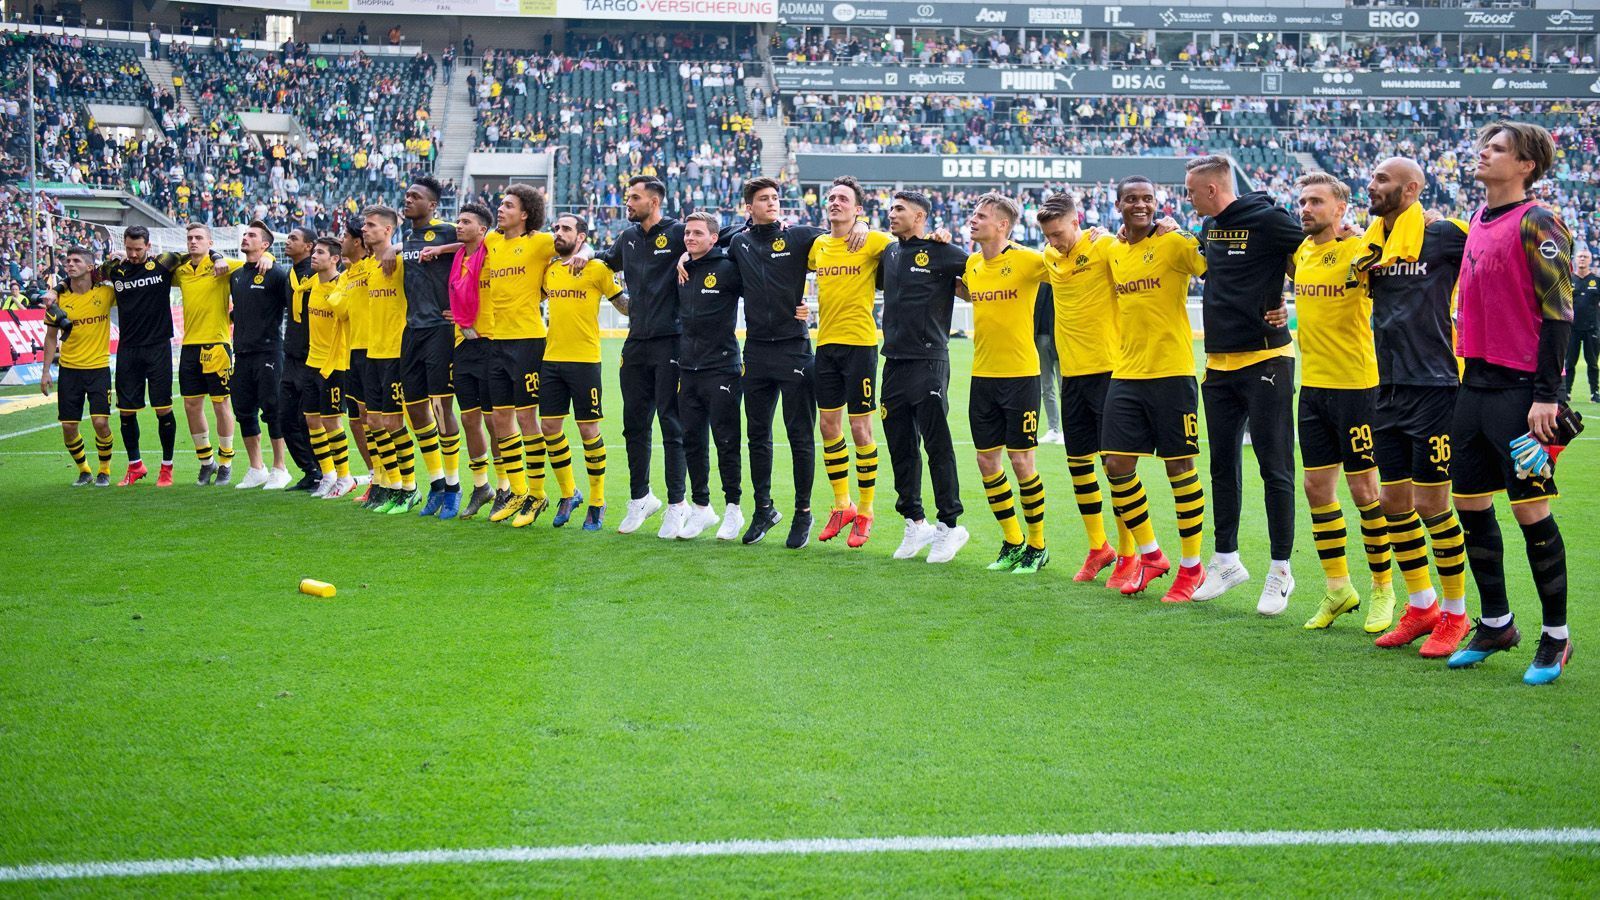 
                <strong>Platz 2: Borussia Dortmund</strong><br>
                Borussia Dortmund spielte in der Saison 2018/2019 an 29 von 34 Spieltagen in einem ausverkauften Stadion.
              